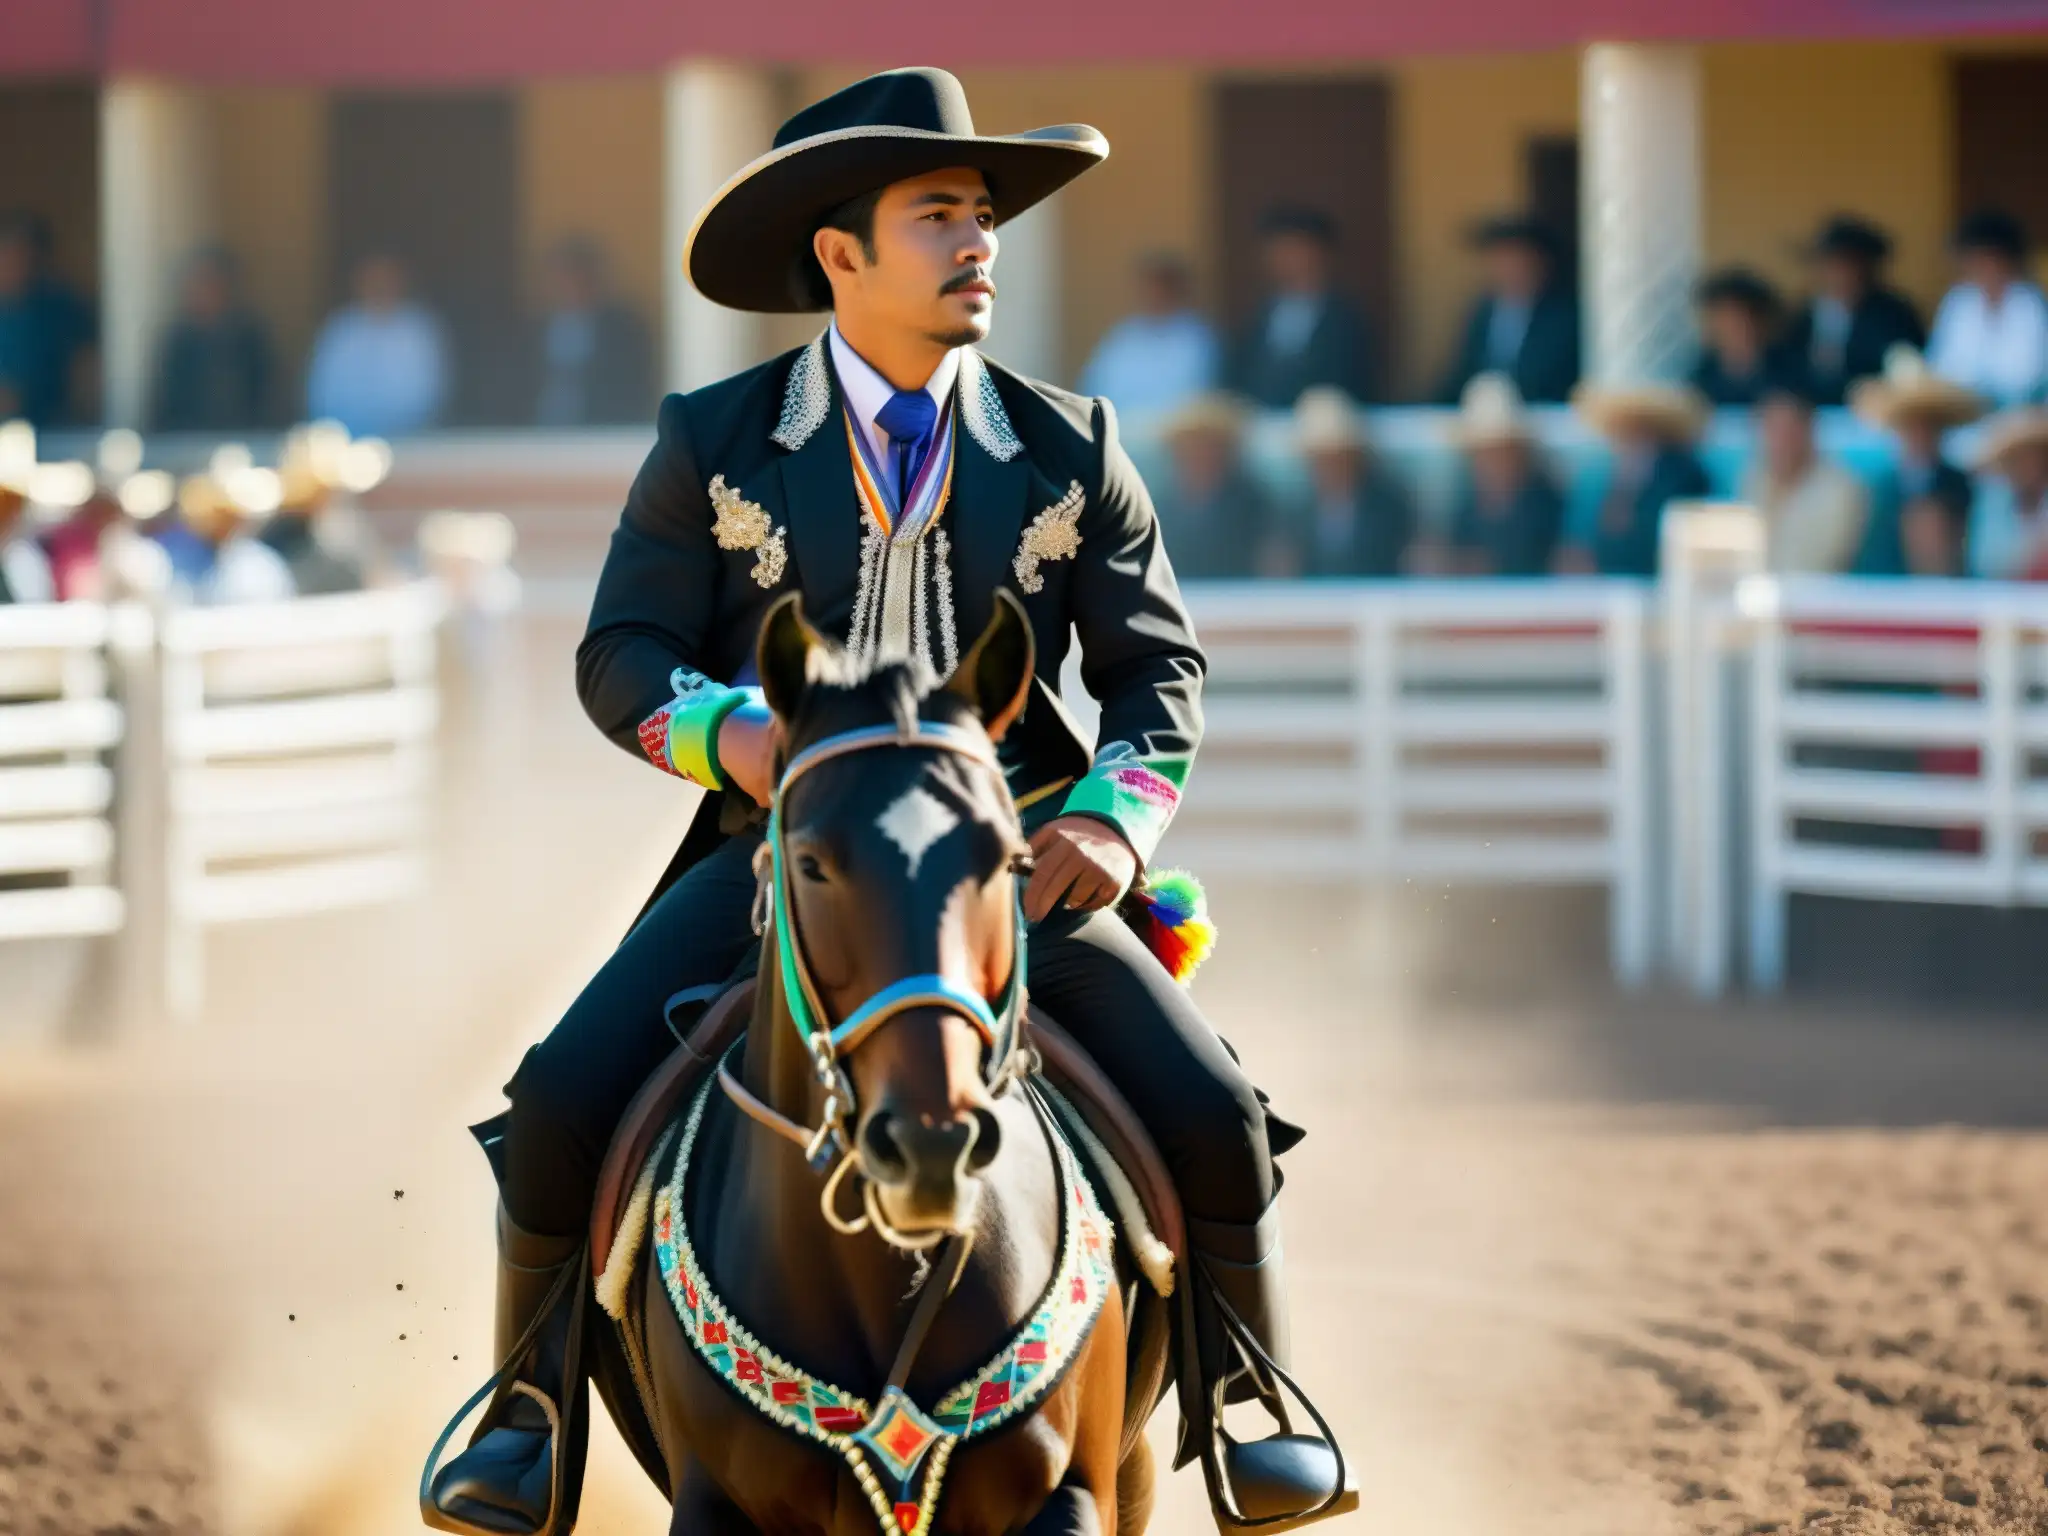 Un impresionante rodeo tradicional mexicano con un charro montando un caballo negro